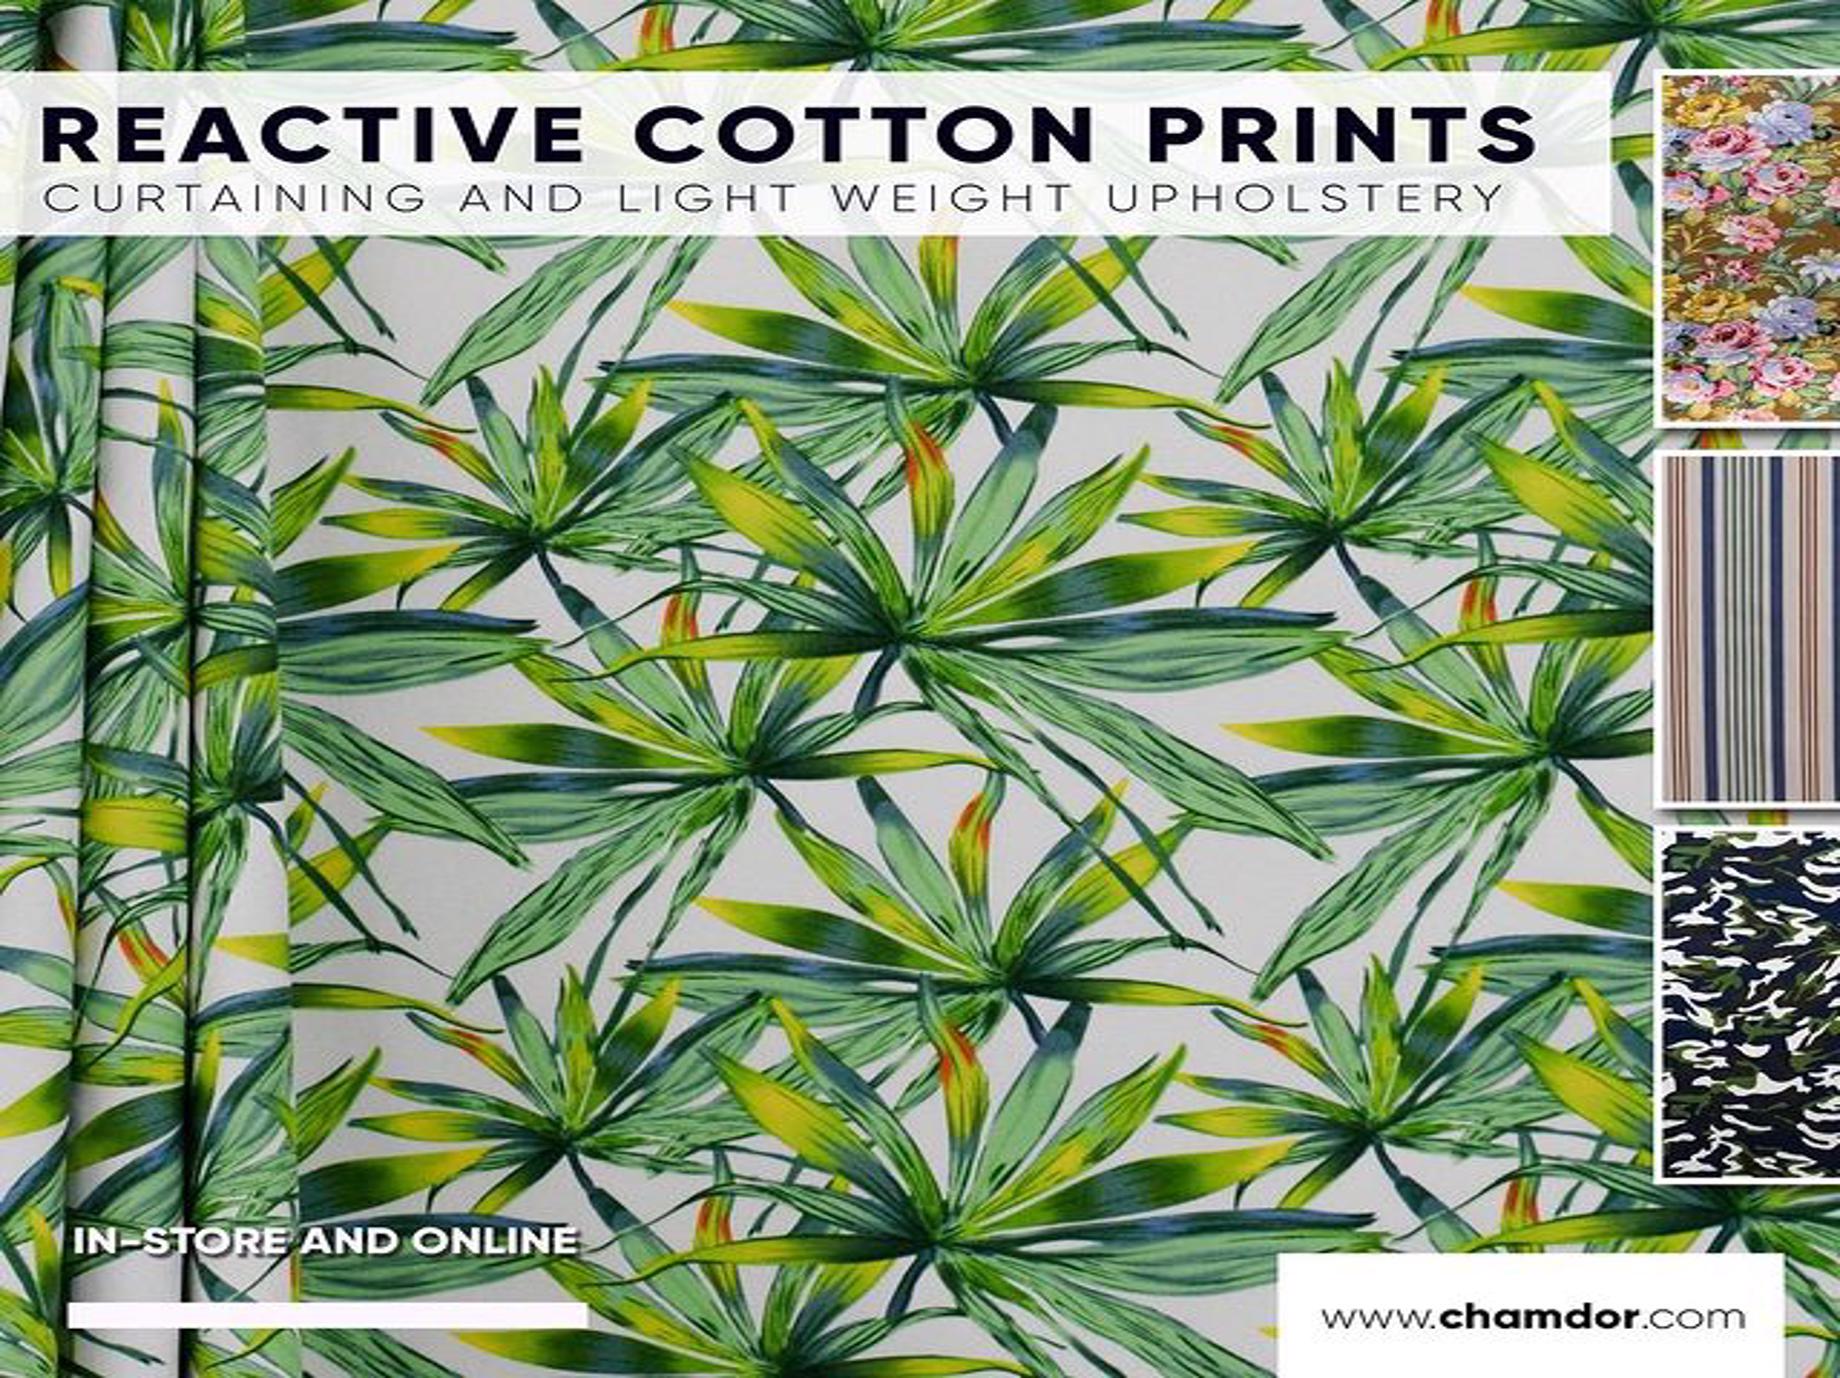 Reactive Cotton Prints